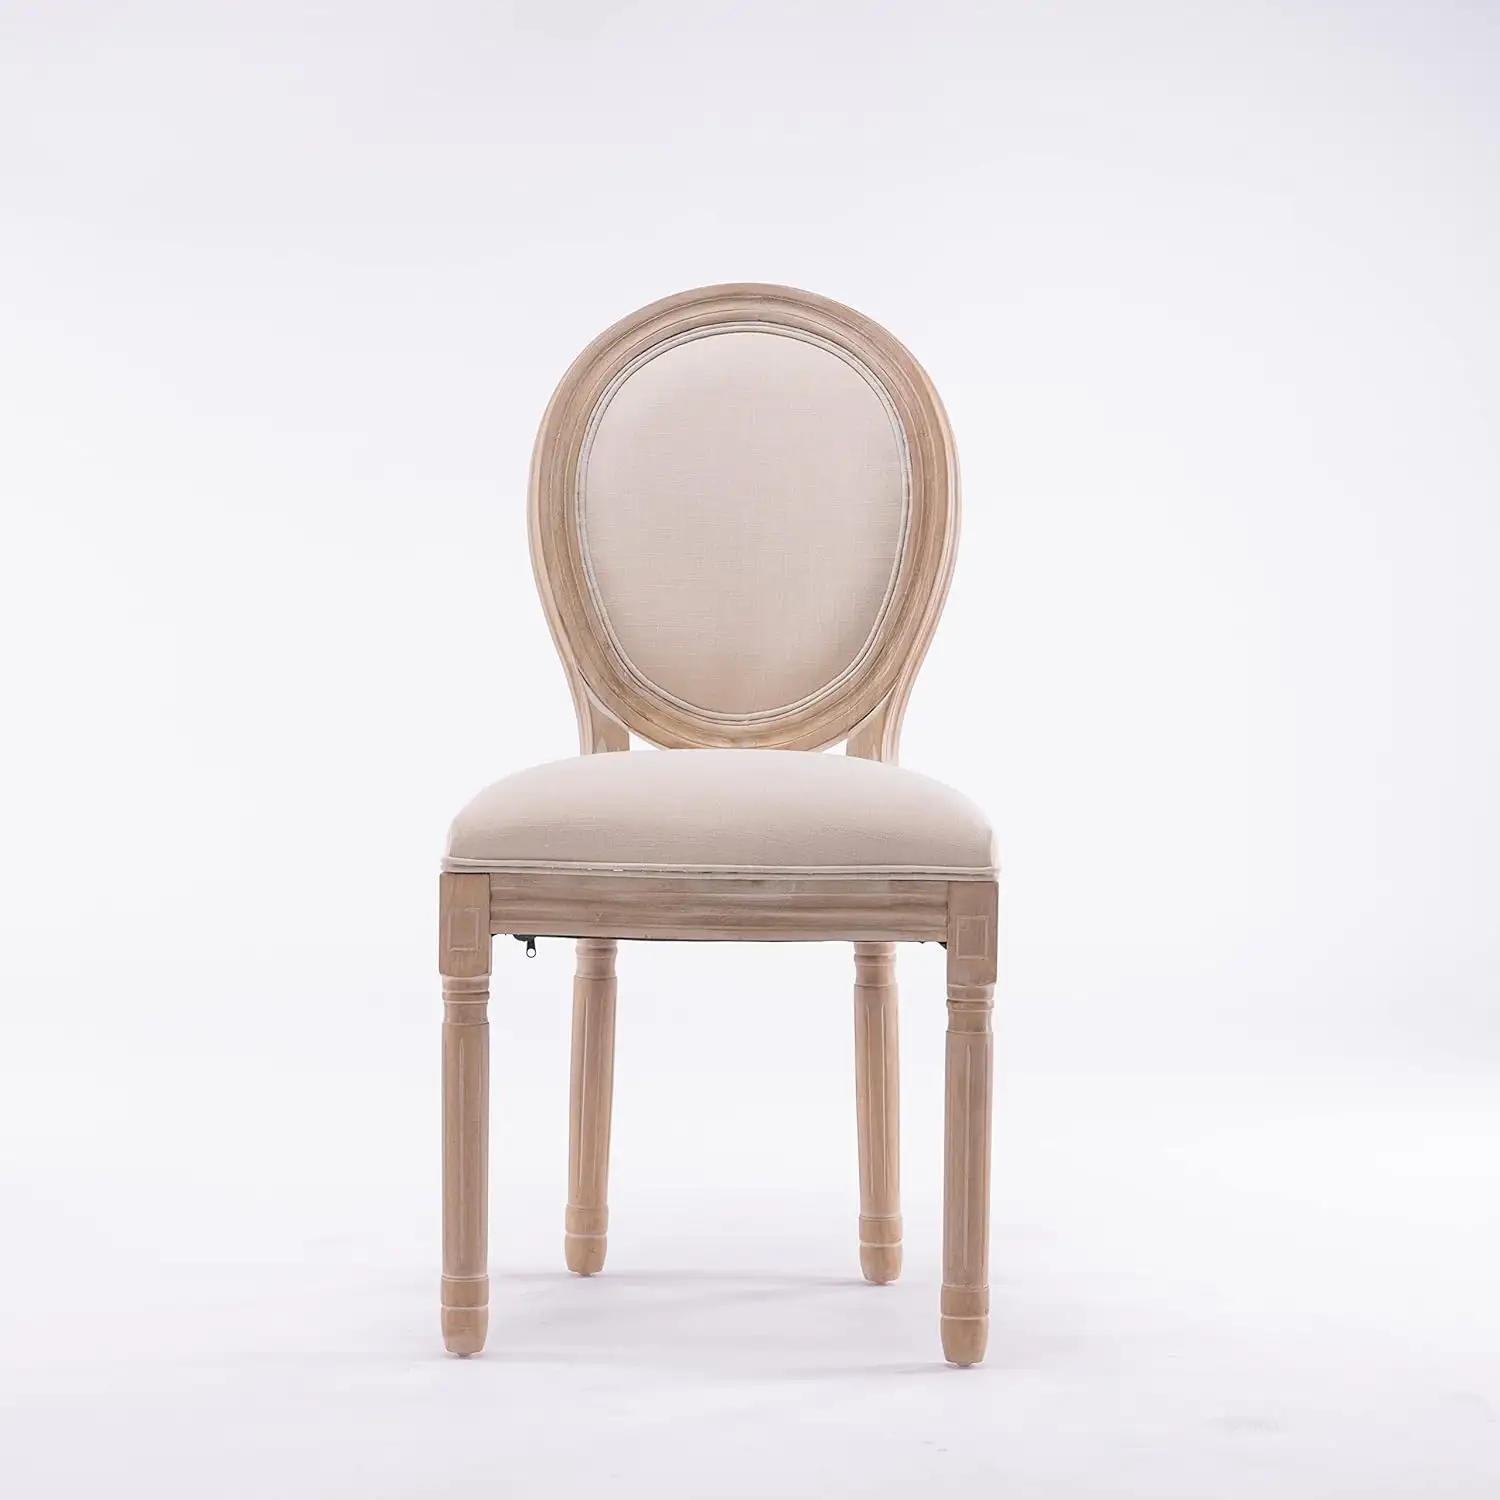 Chaise en rotin rétro française Chaise en bois massif Prévoir de faire de vieilles chaises pour banquet d'hôtel